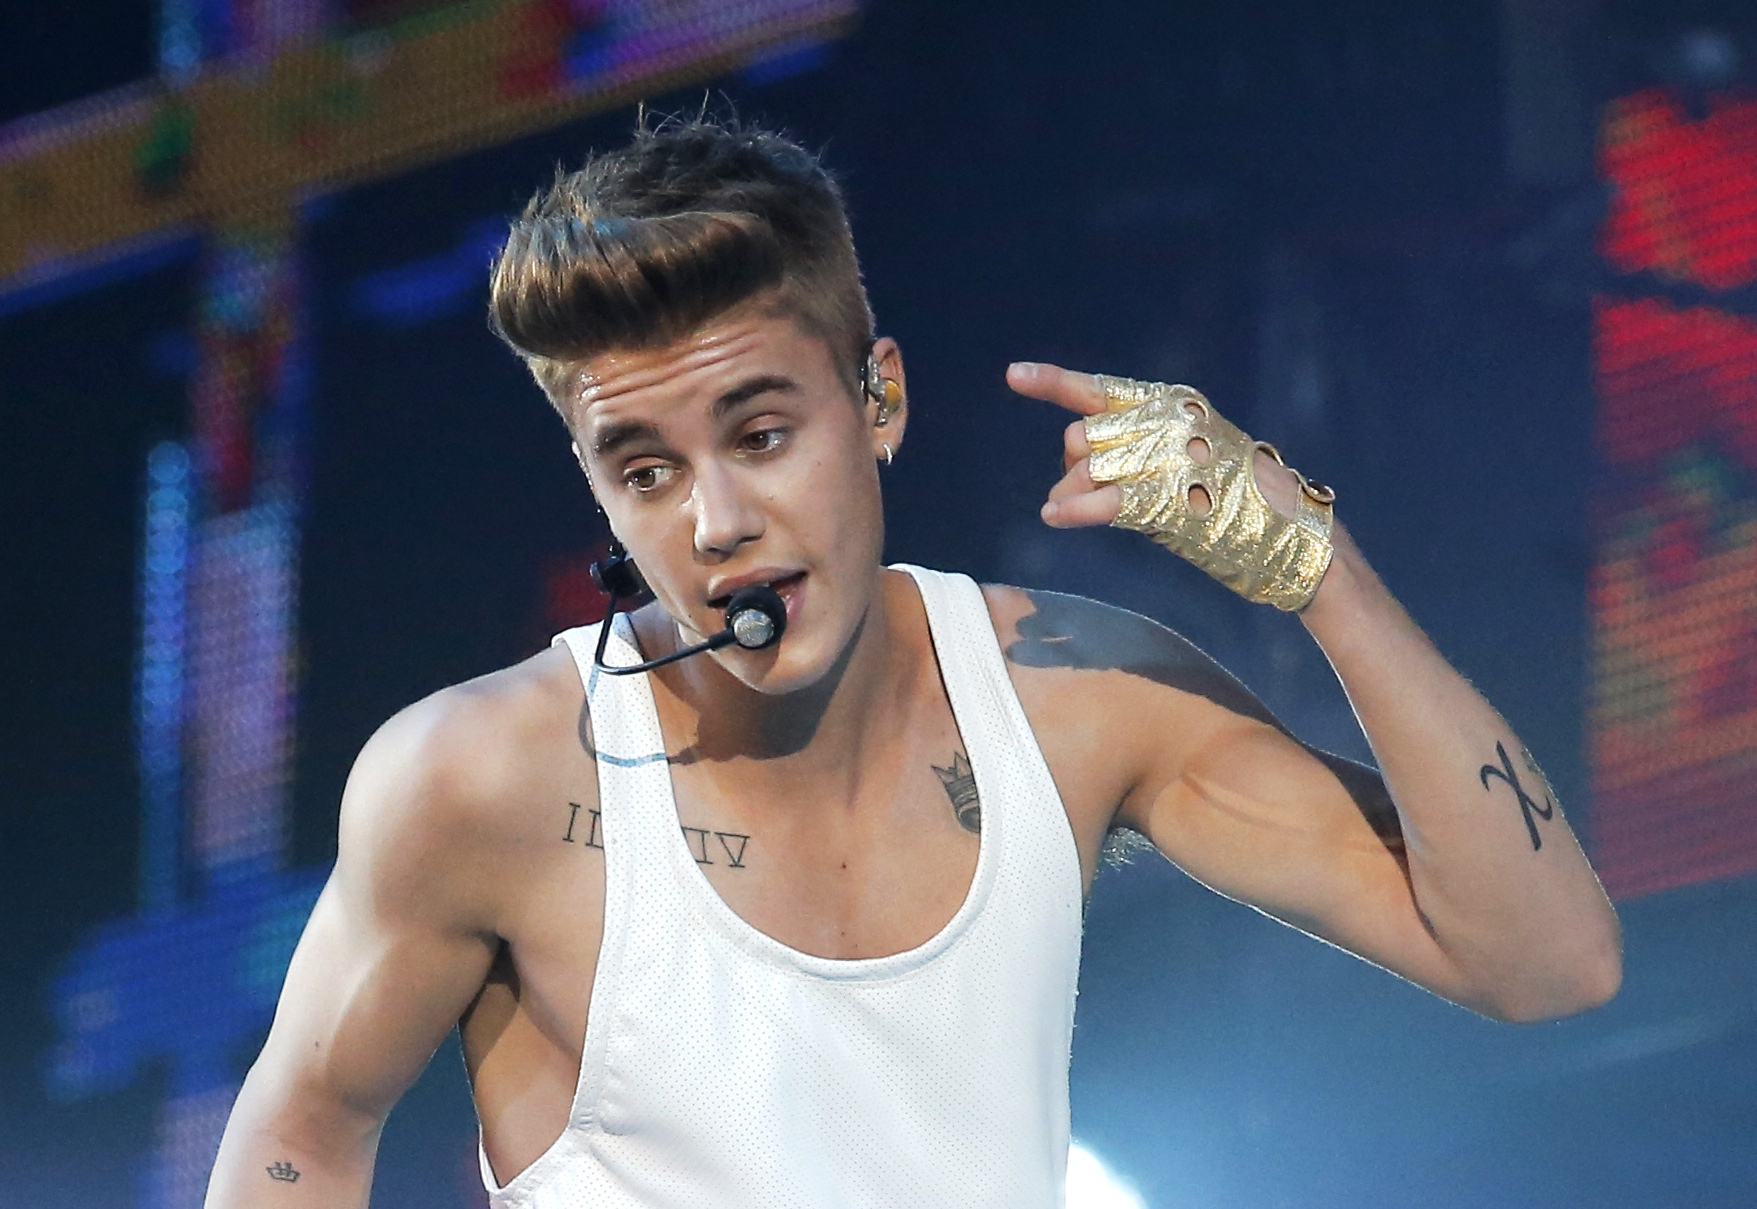 Justin Bieber detido após acidente com paparazzi